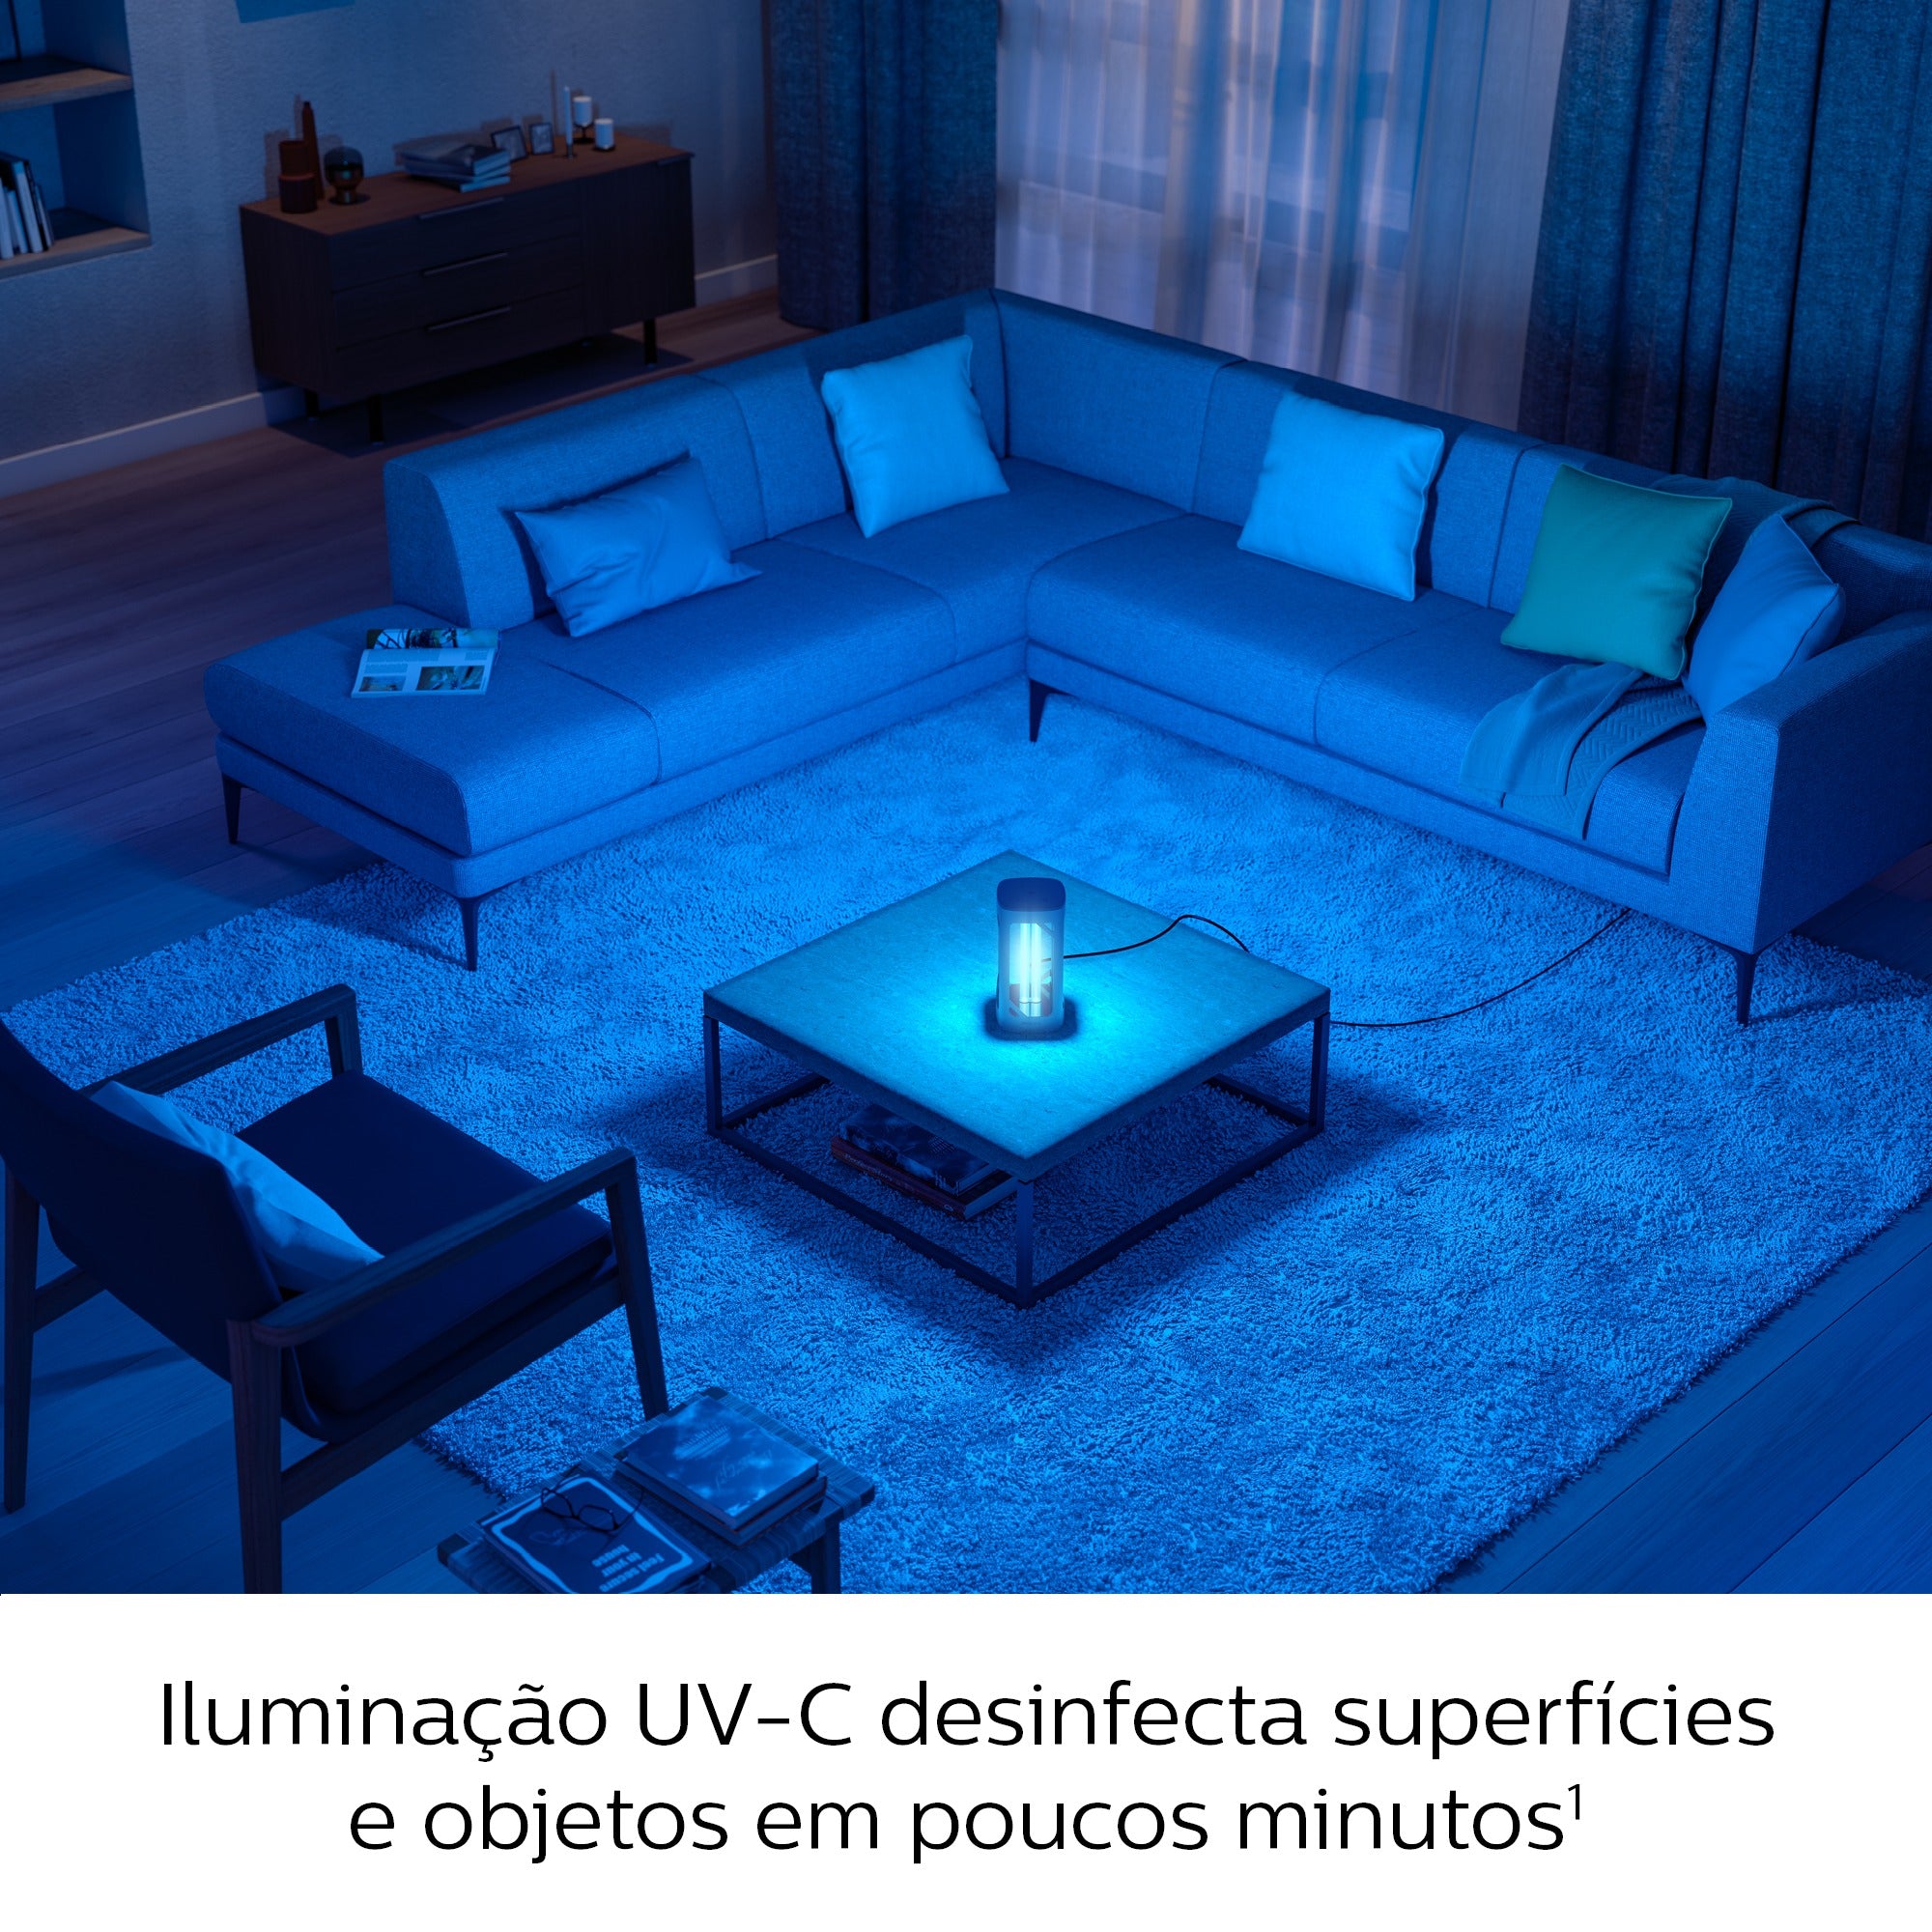 Luminaria De Mesa UV-C De Desinfecção Germicida 24W Philips